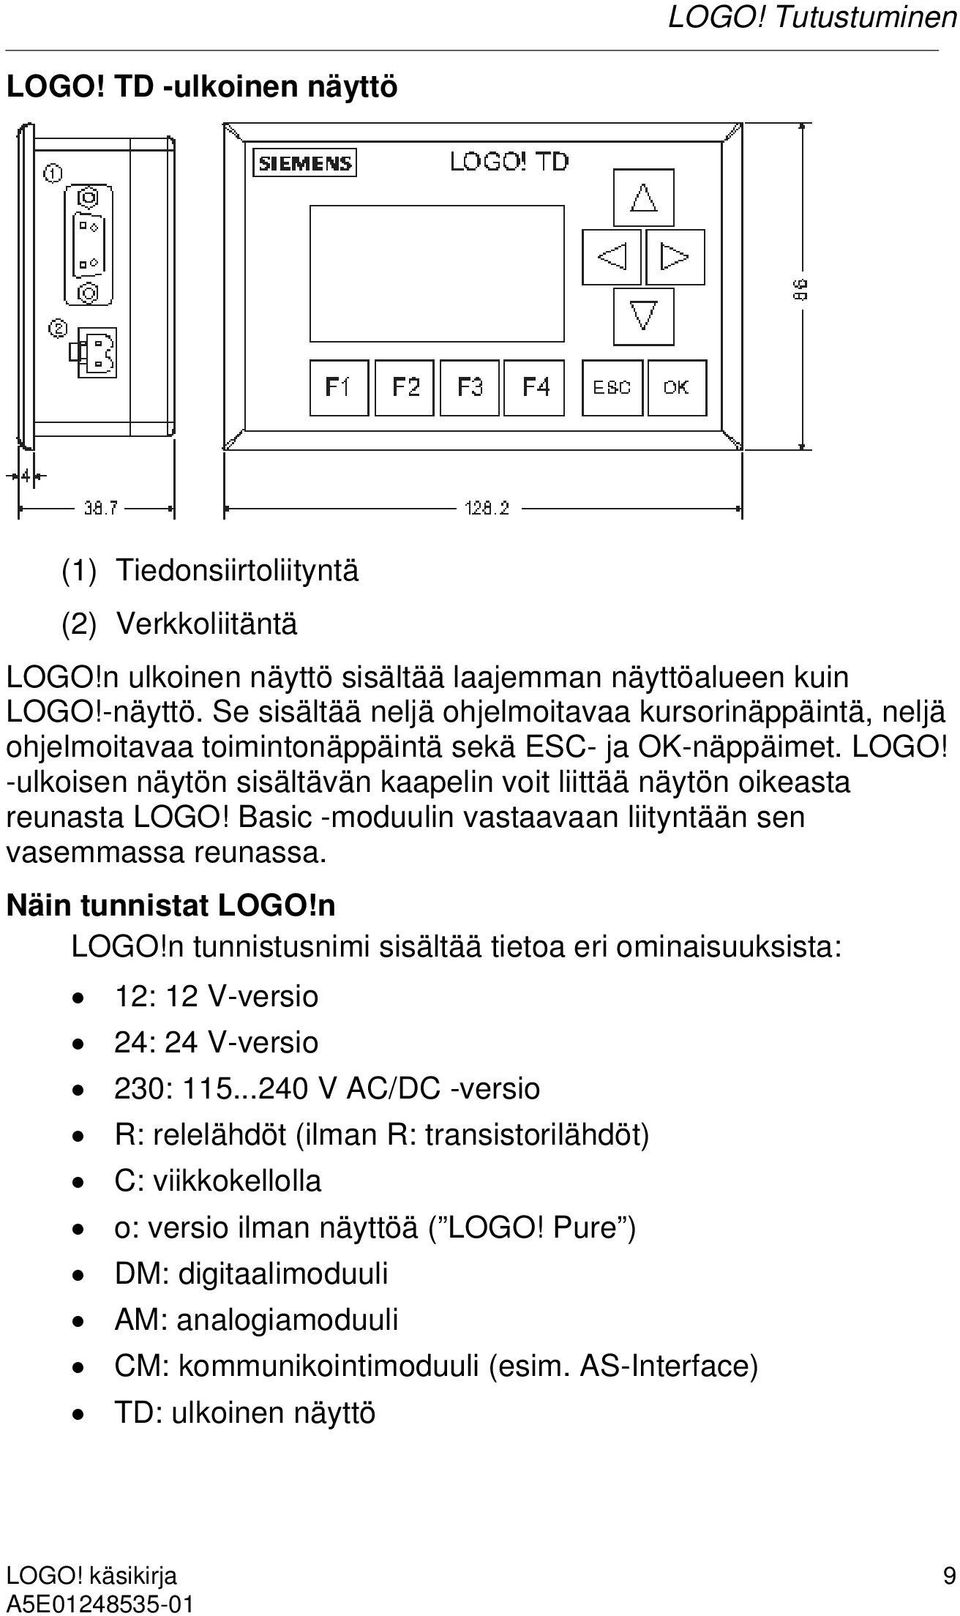 -ulkoisen näytön sisältävän kaapelin voit liittää näytön oikeasta reunasta LOGO! Basic -moduulin vastaavaan liityntään sen vasemmassa reunassa. Näin tunnistat LOGO!n LOGO!